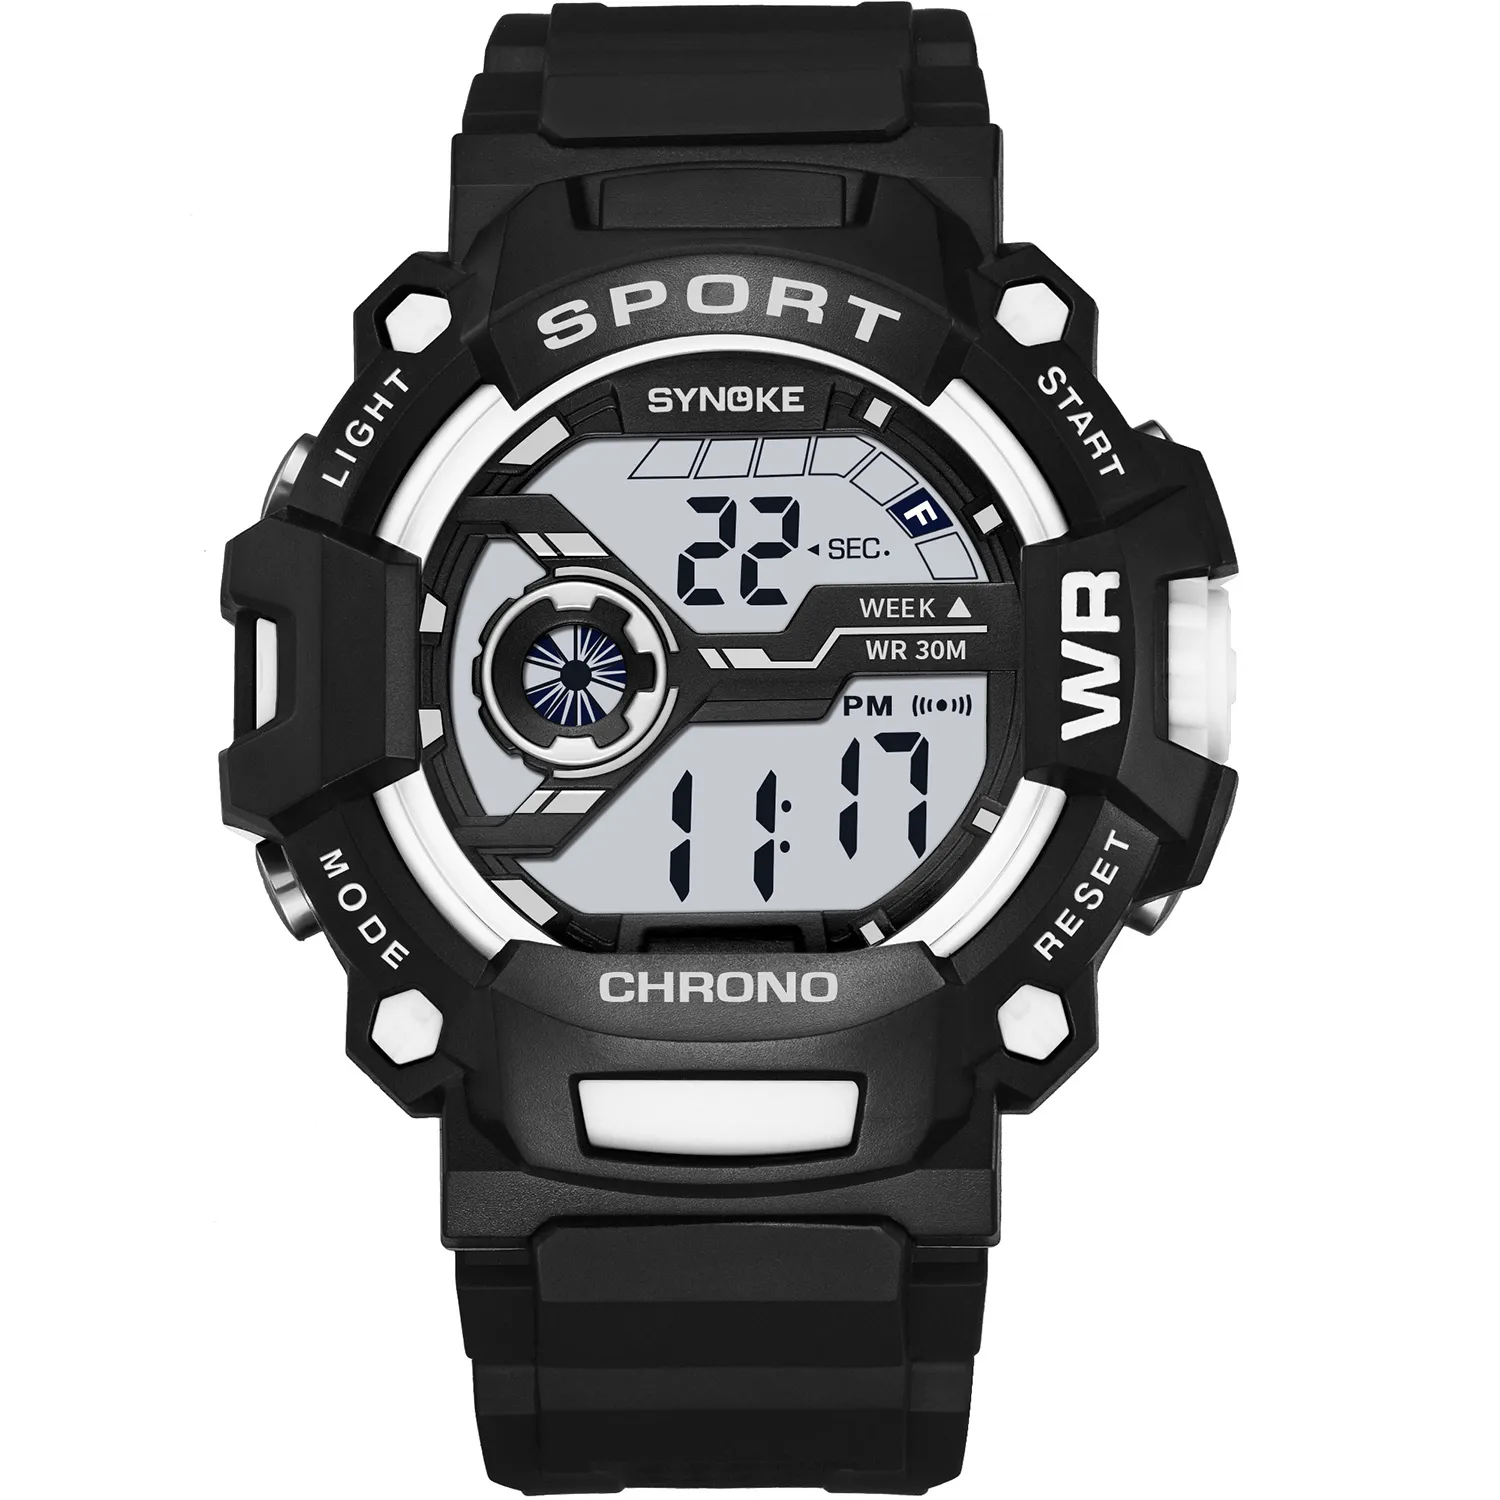 PANARS mode hommes montre numérique étanche Sports de plein air hommes Sport montres LED horloge électronique pour Men2356